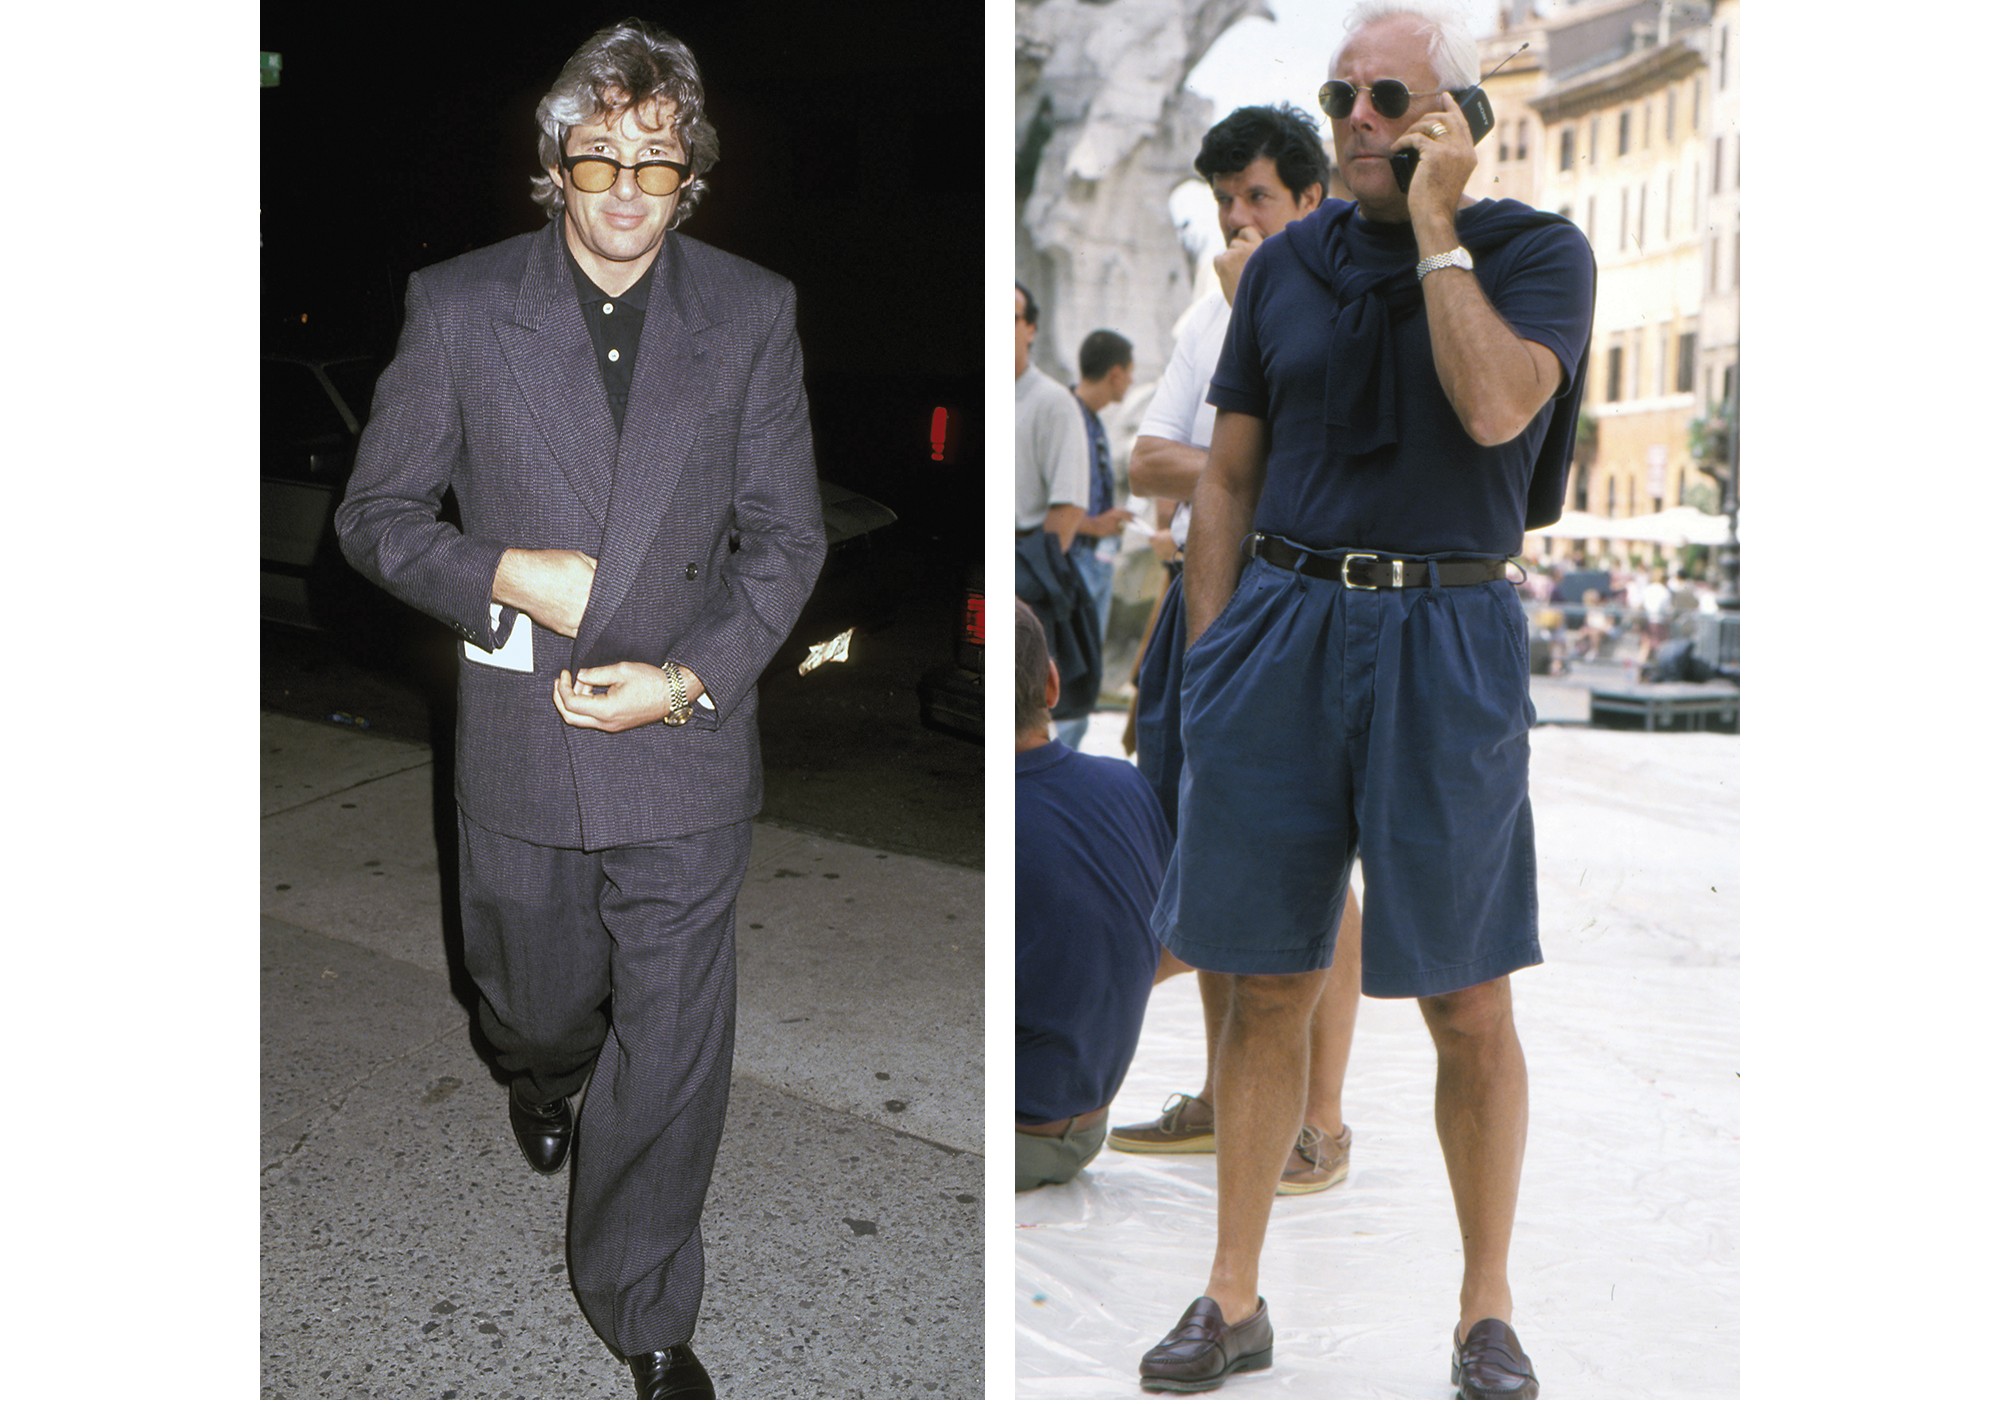 Gigolô Americano: Gere em look oversized e Armani com bermuda de pregas; os dois na década de 90 (Foto: Getty Images)